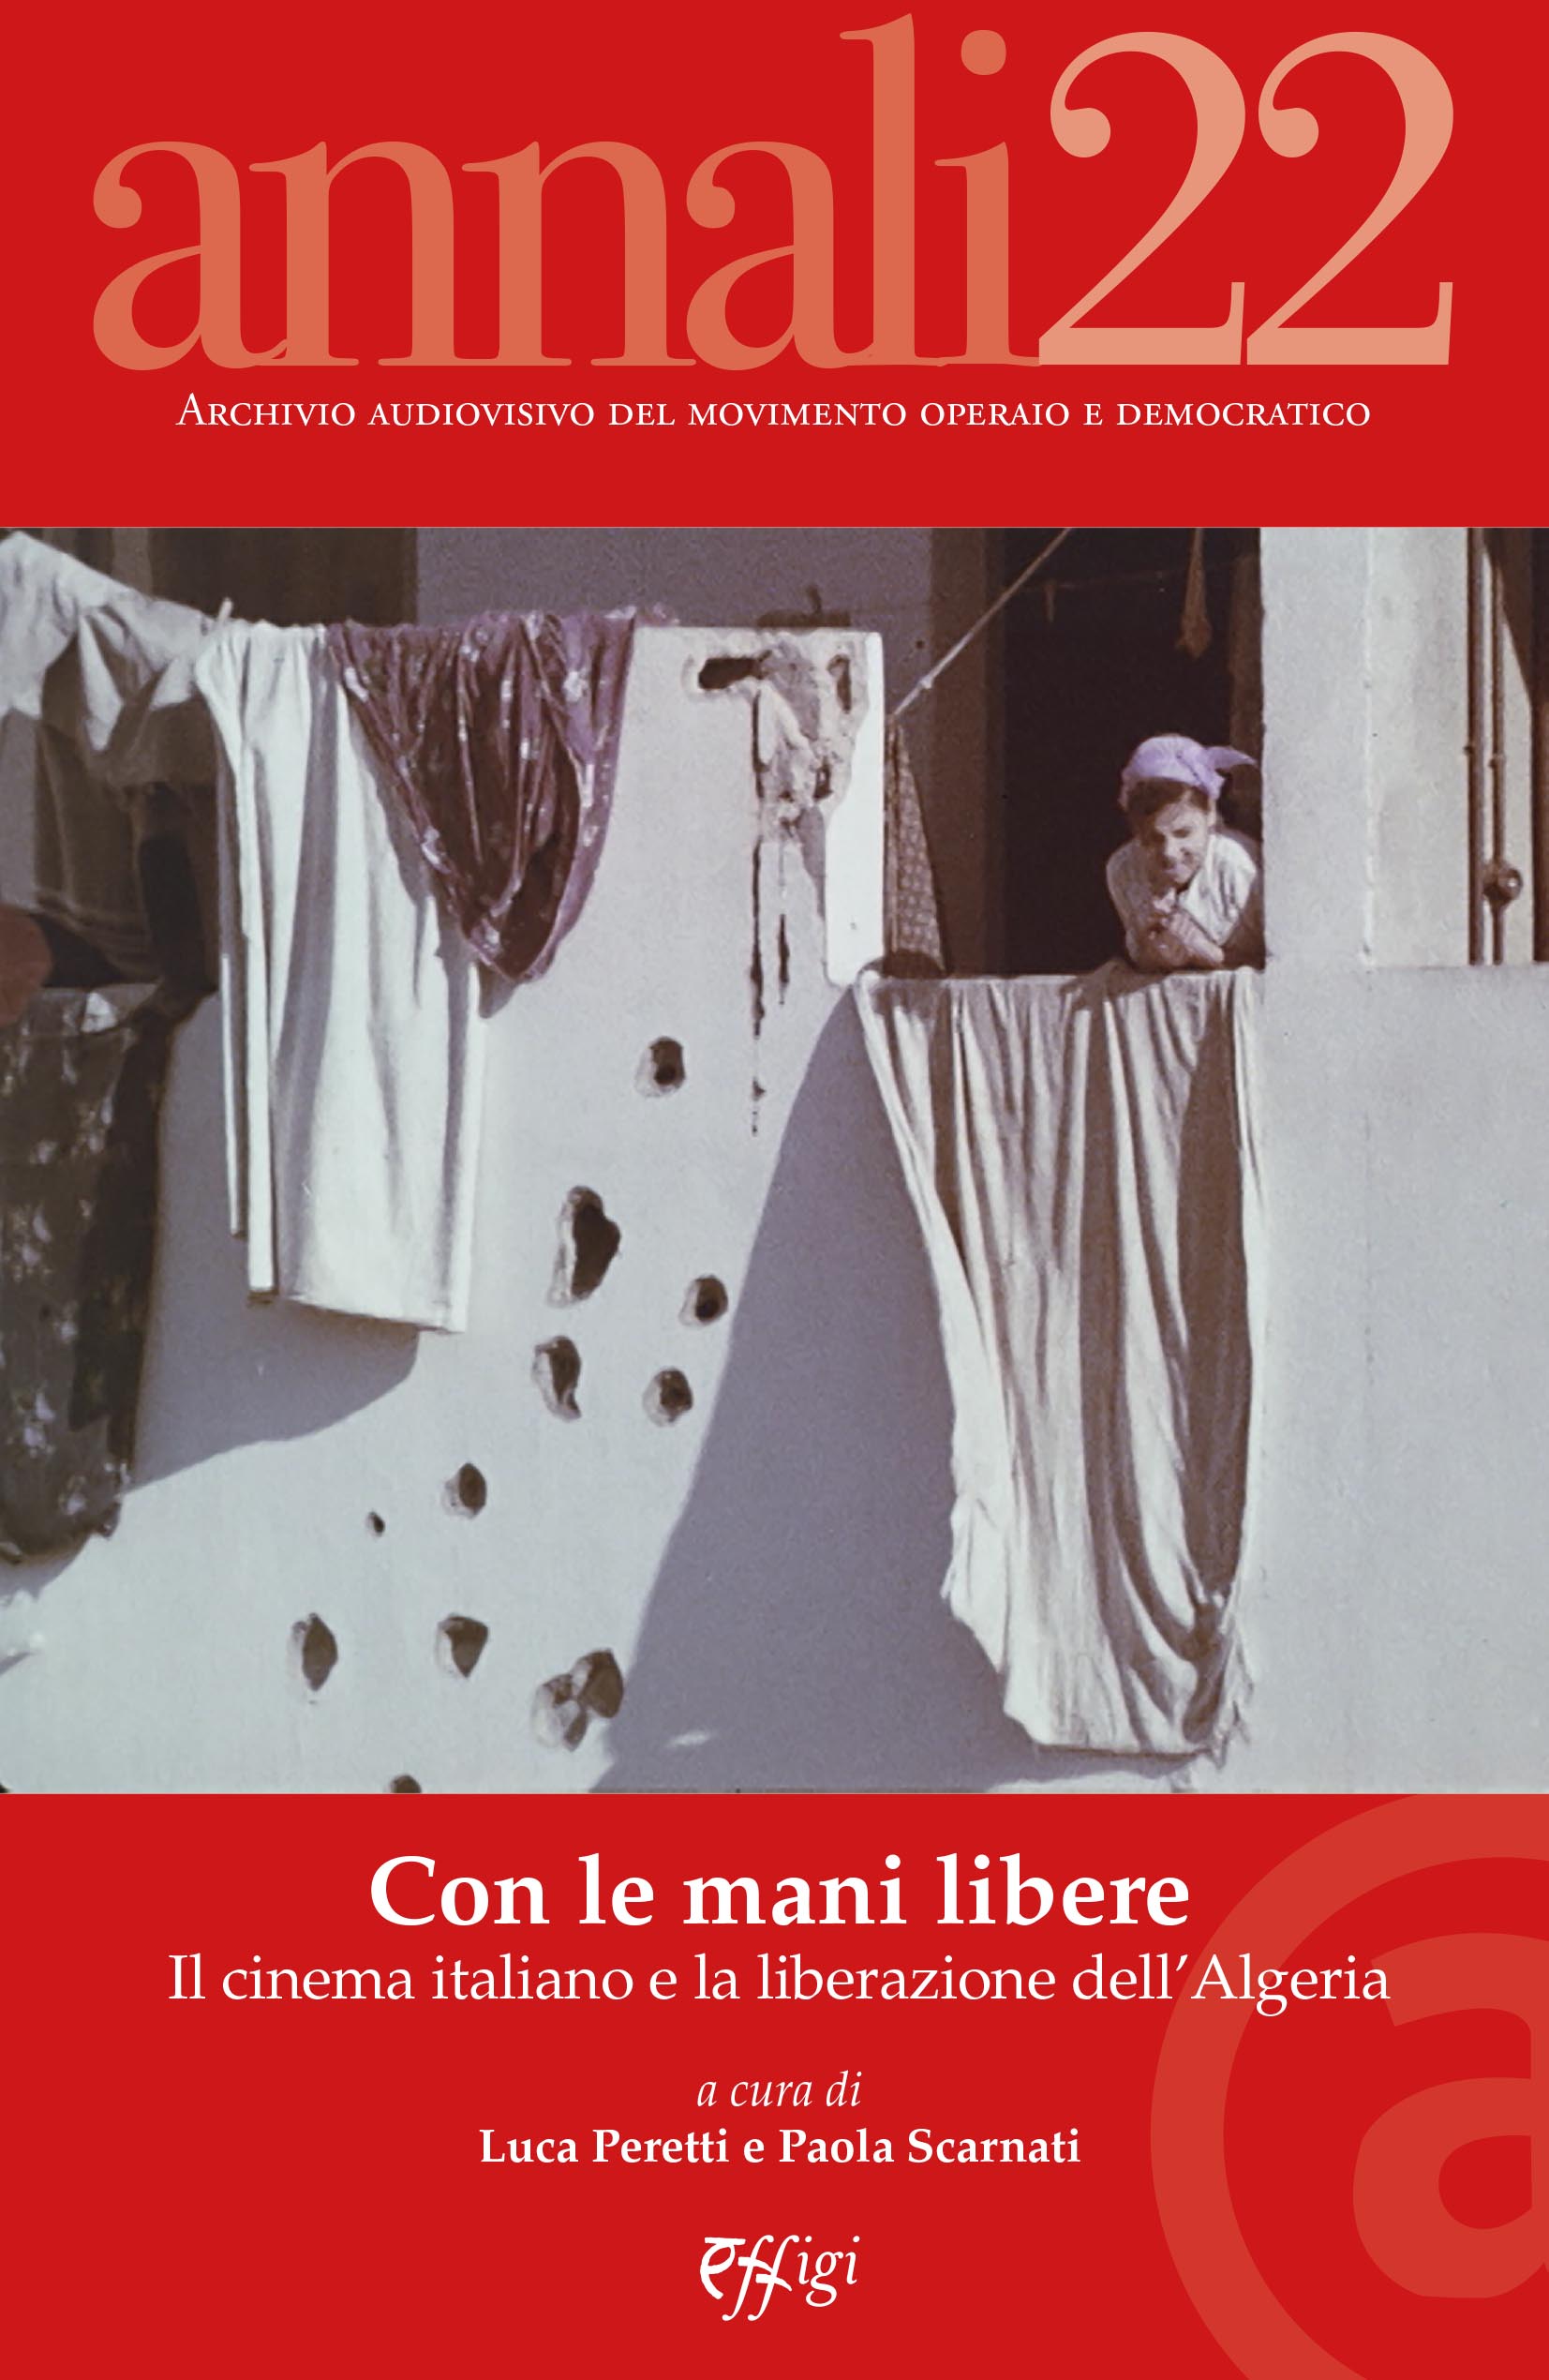 “Con le mani libere. Il cinema italiano e la liberazione dell’Algeria